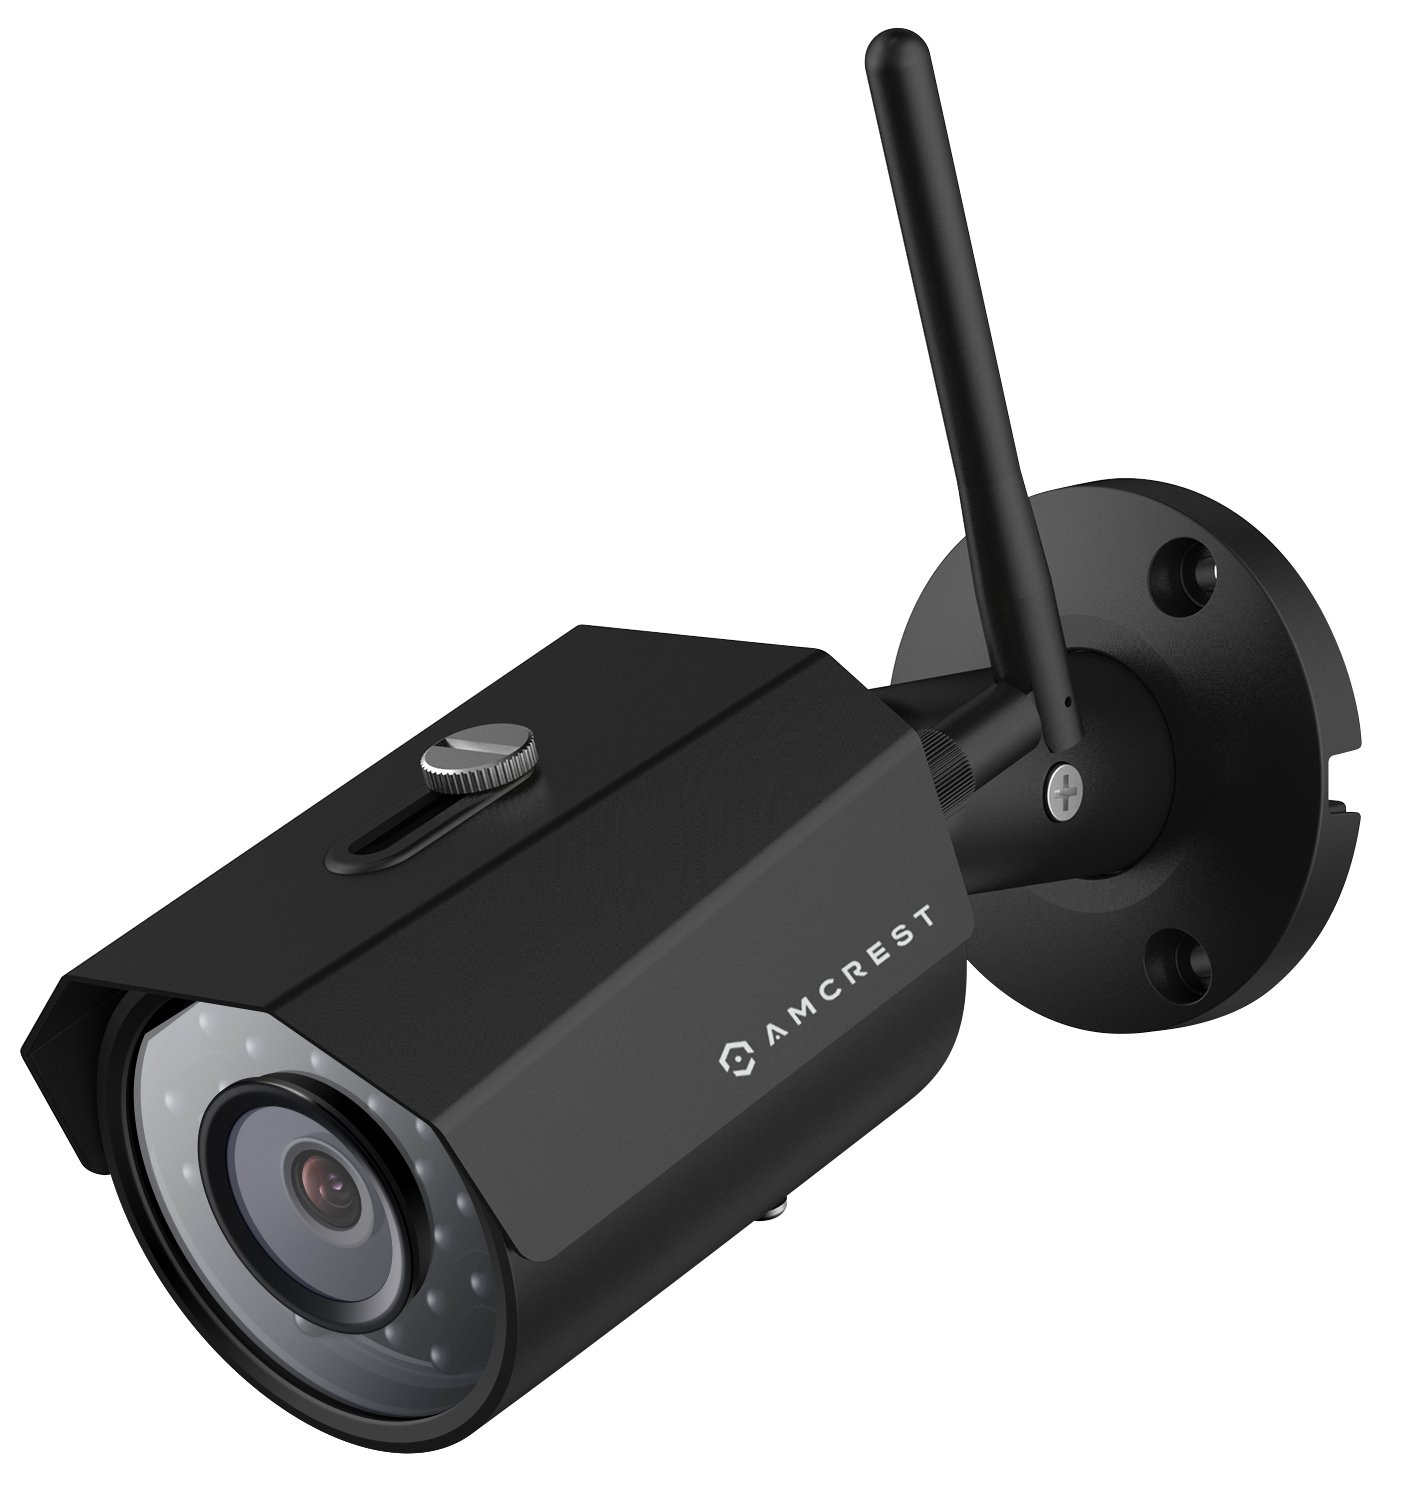 Veronderstellen Vooruitzicht rijm Amcrest HDSeries 1.3 MP WiFi Wireless IP Security Surveillance Bullet Camera  - IP67 Weatherproof, HD Megapixel 1.3MP (1280TVL), IPM-723S (Silver)